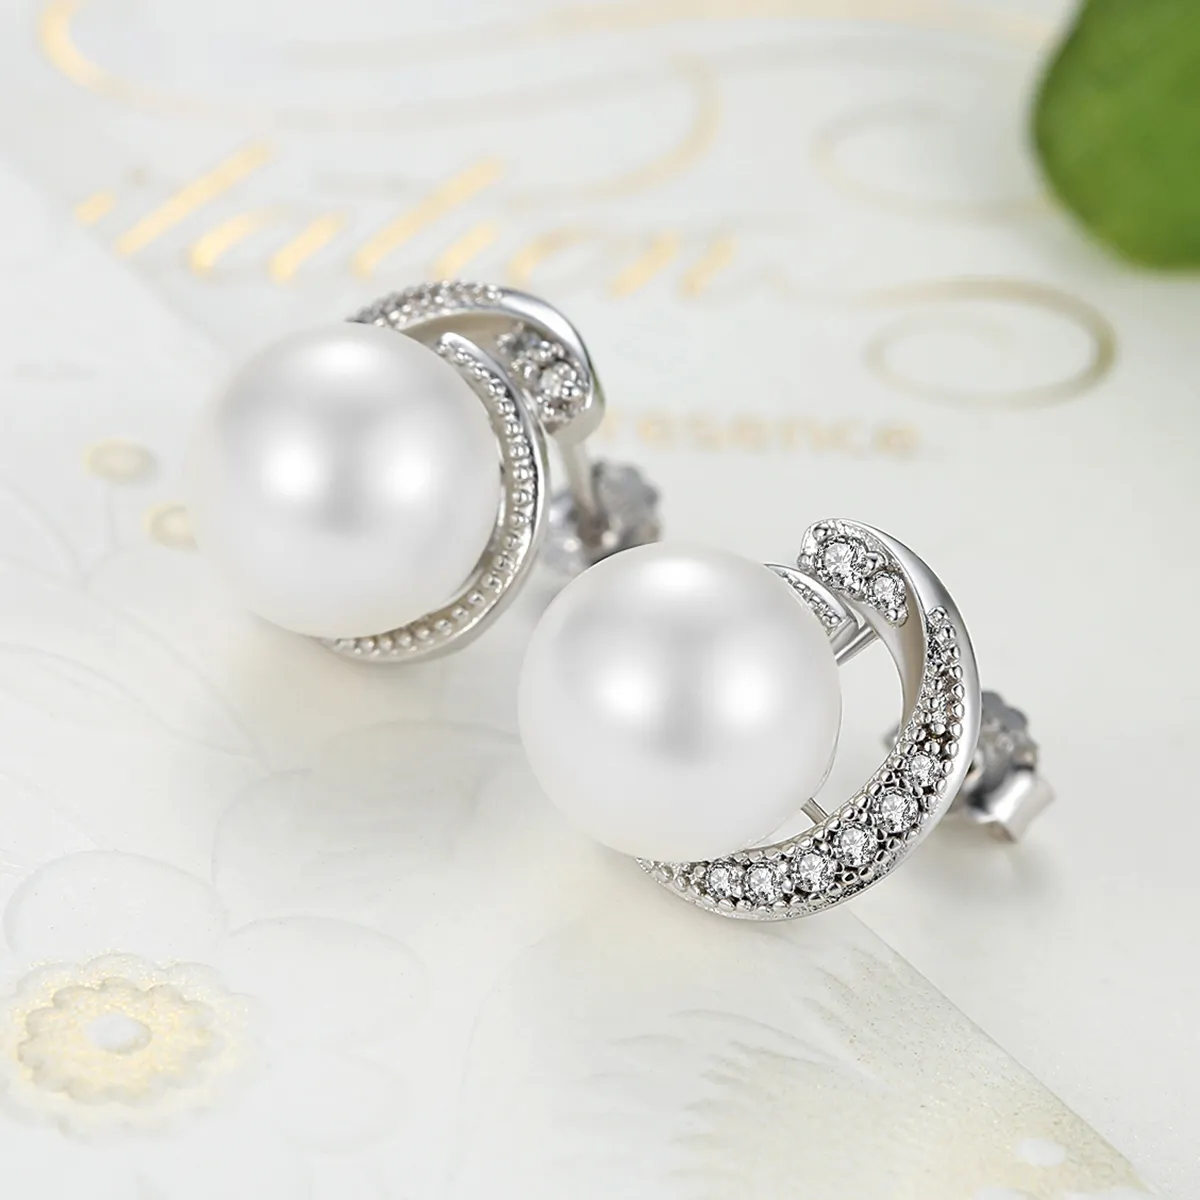 Pandora Style Silver Pearl Stud Earrings - SCE021